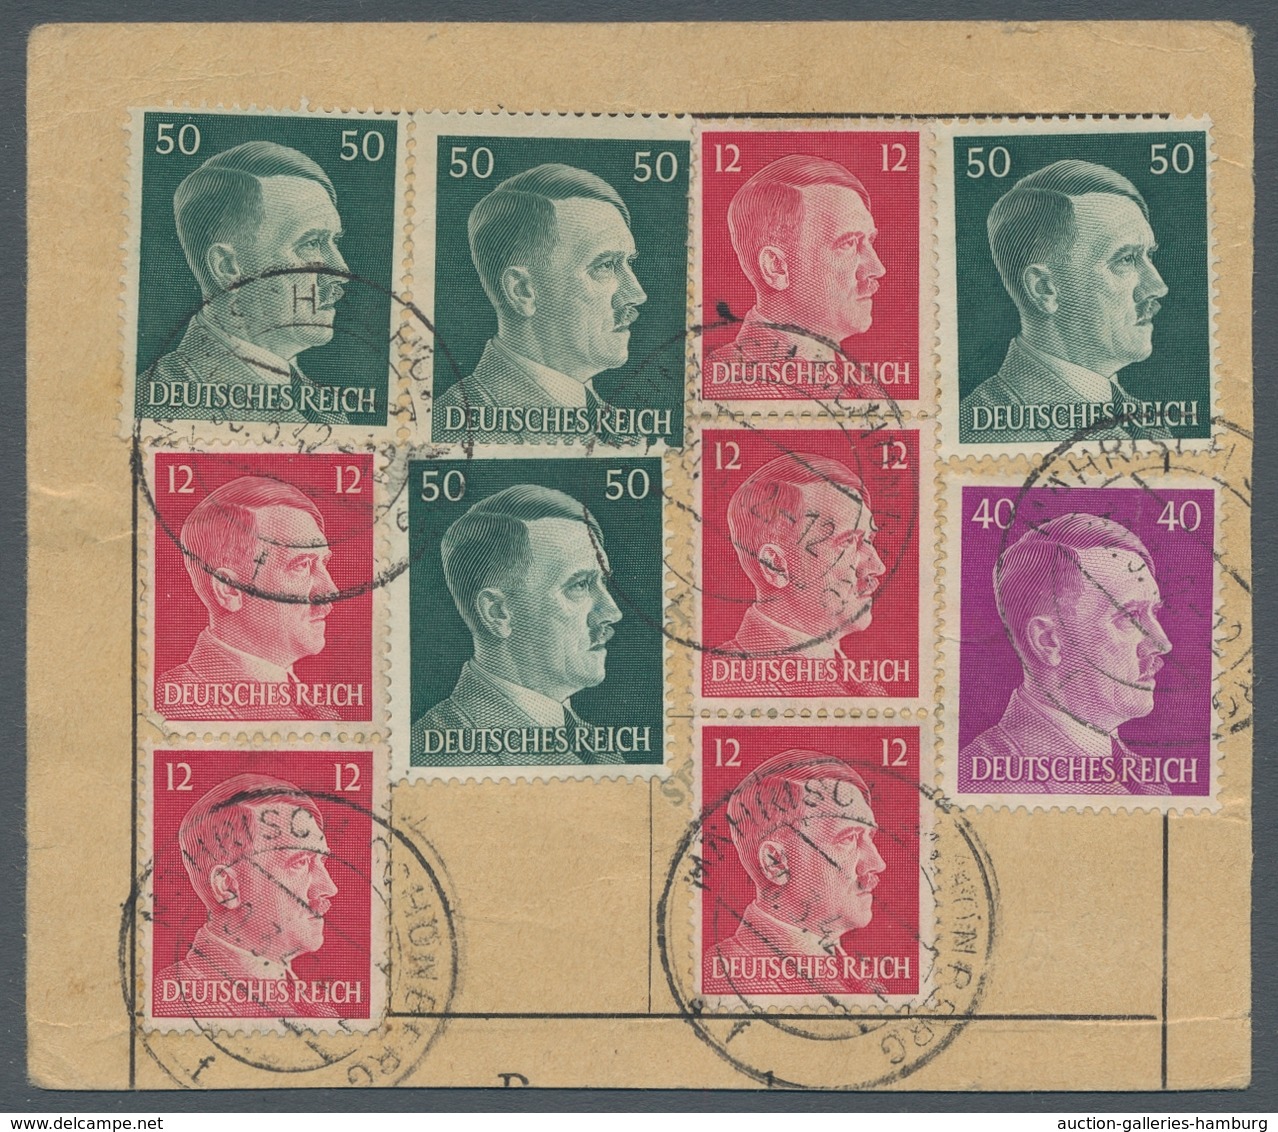 Ansichtskarten: Propaganda: 1942, Seltene Frankierte HJ-Postsparkarte Dür 3 Reichsmark, Verwendet In - Political Parties & Elections